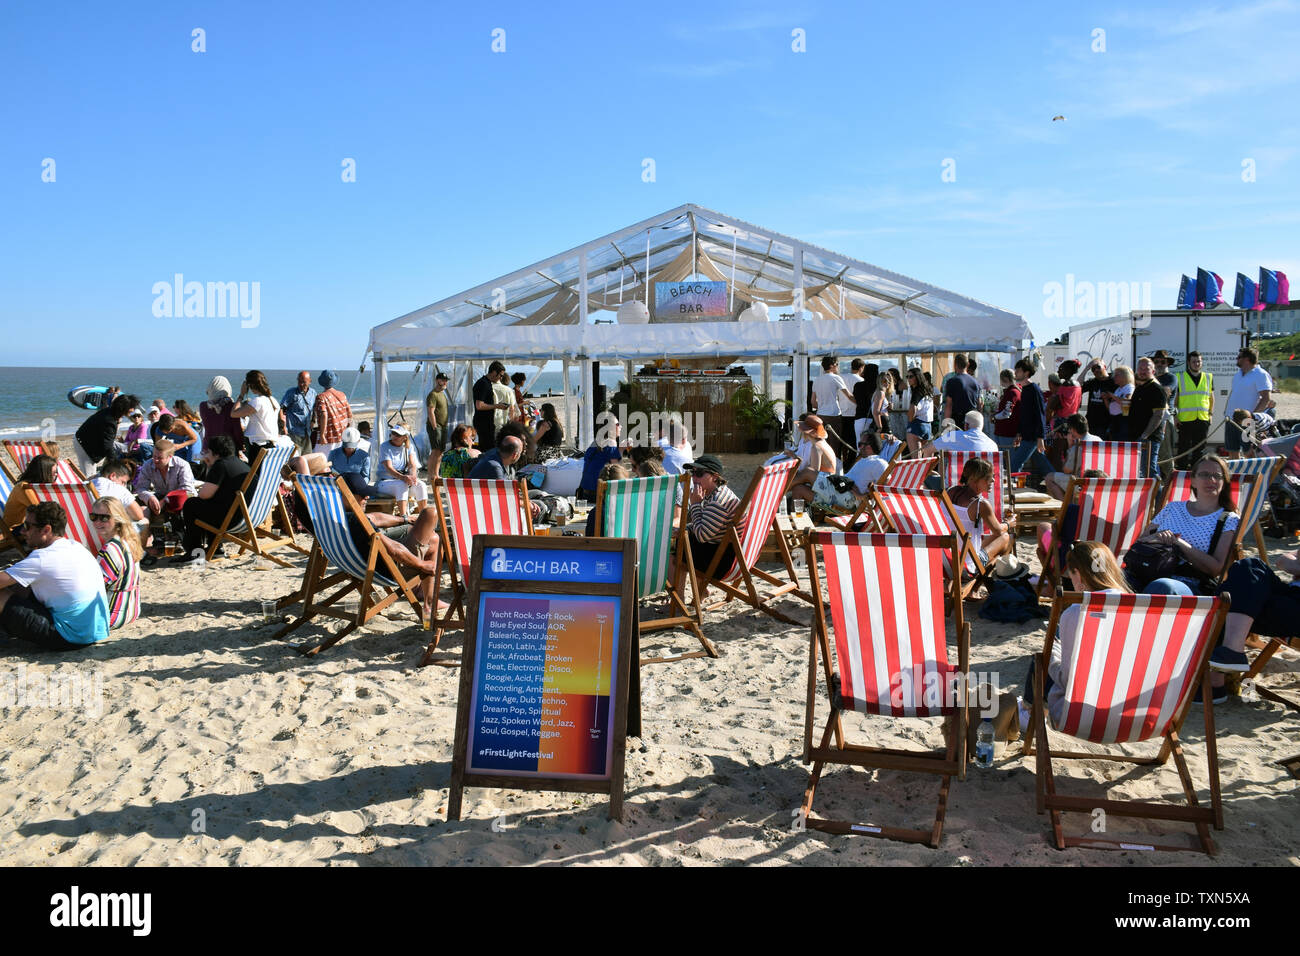 Beach Bar, First Light Festival, Lowestoft Suffolk vom 22. Juni 2019. 24  Stunden Festival über die sommersonnenwende Wochenende am Strand von  Großbritanniens mo statt Stockfotografie - Alamy